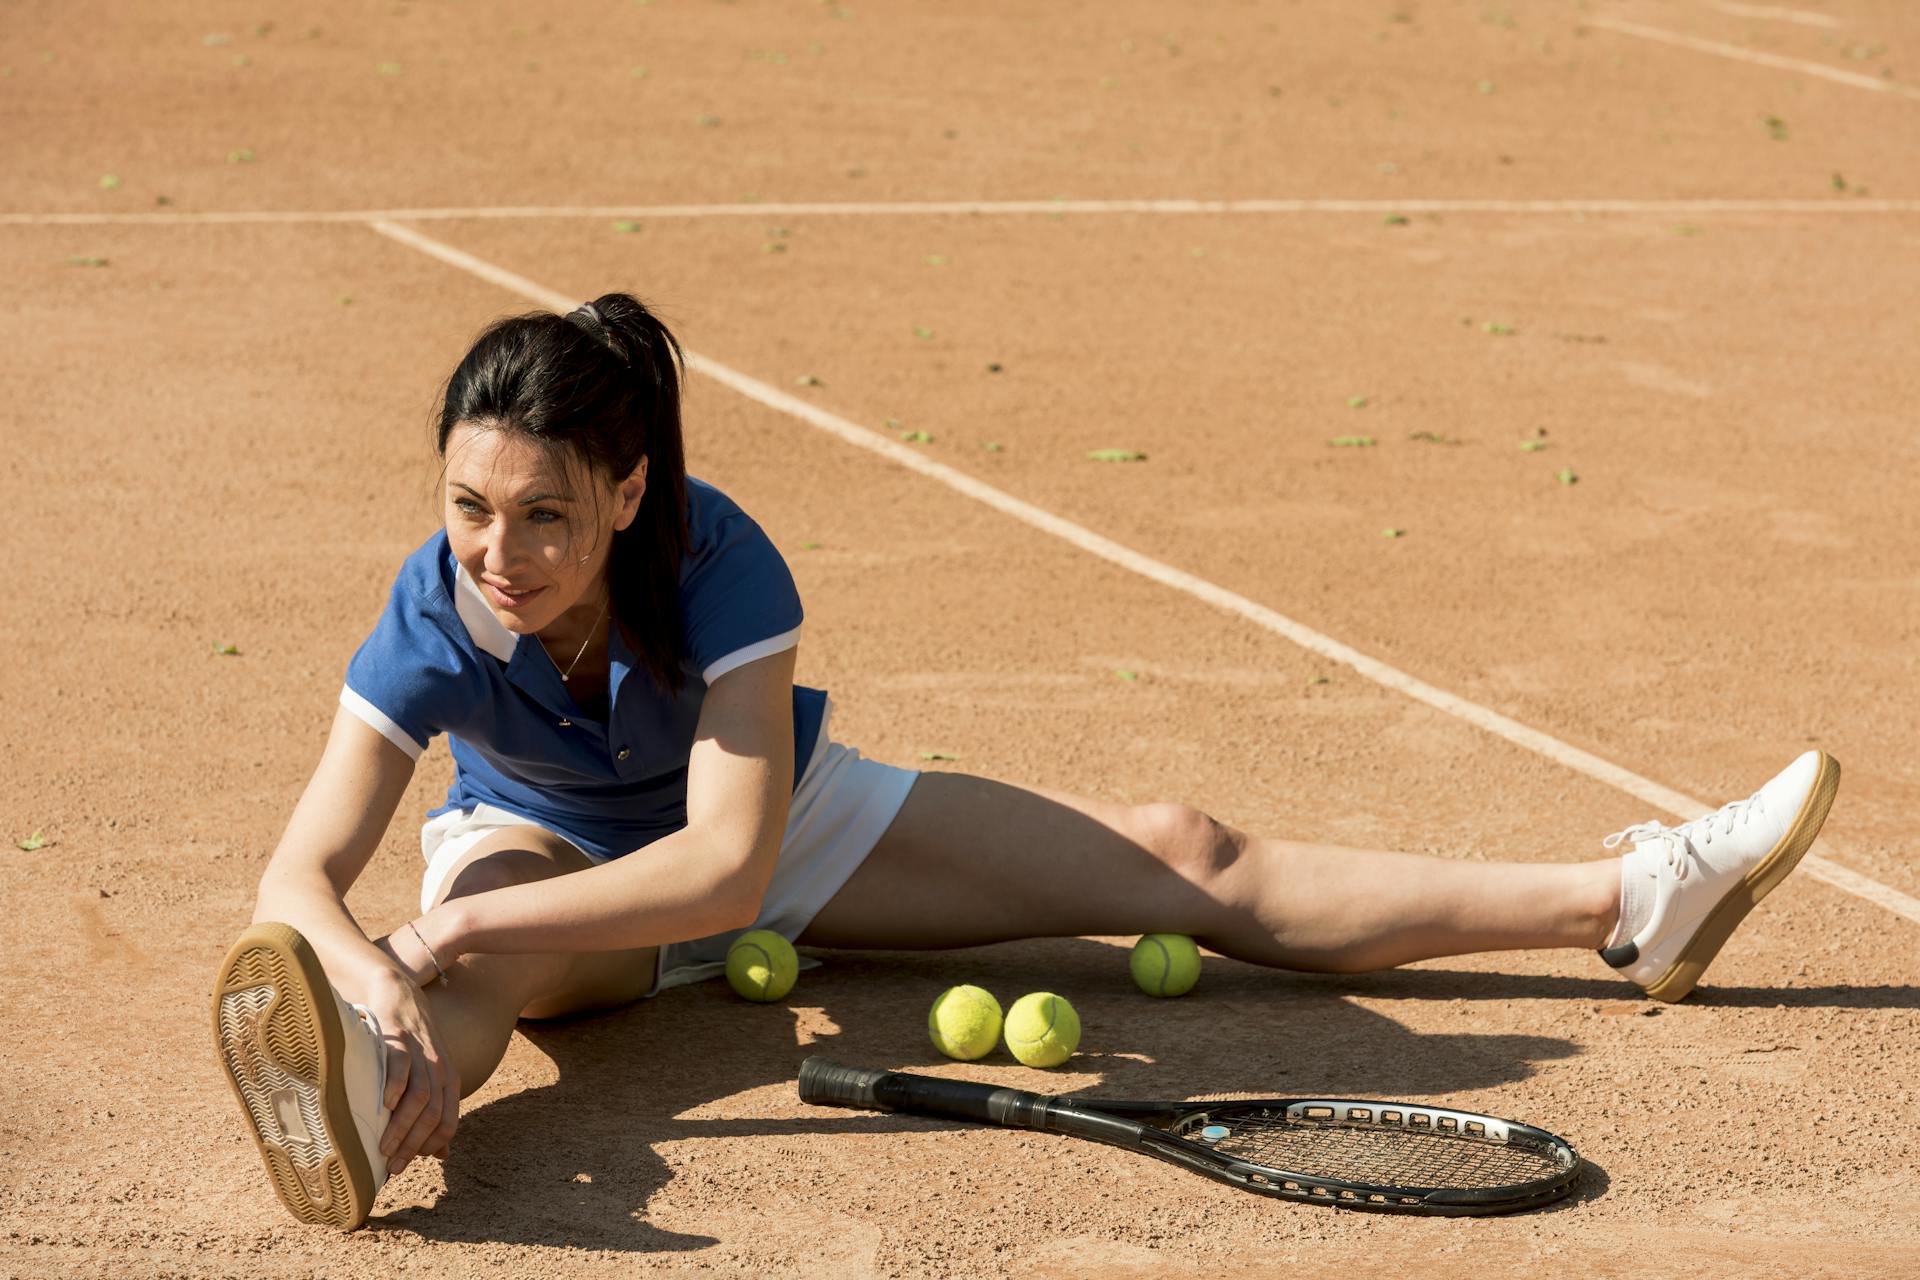 Tennis e padel: gli infortuni più comuni e come prevenirli